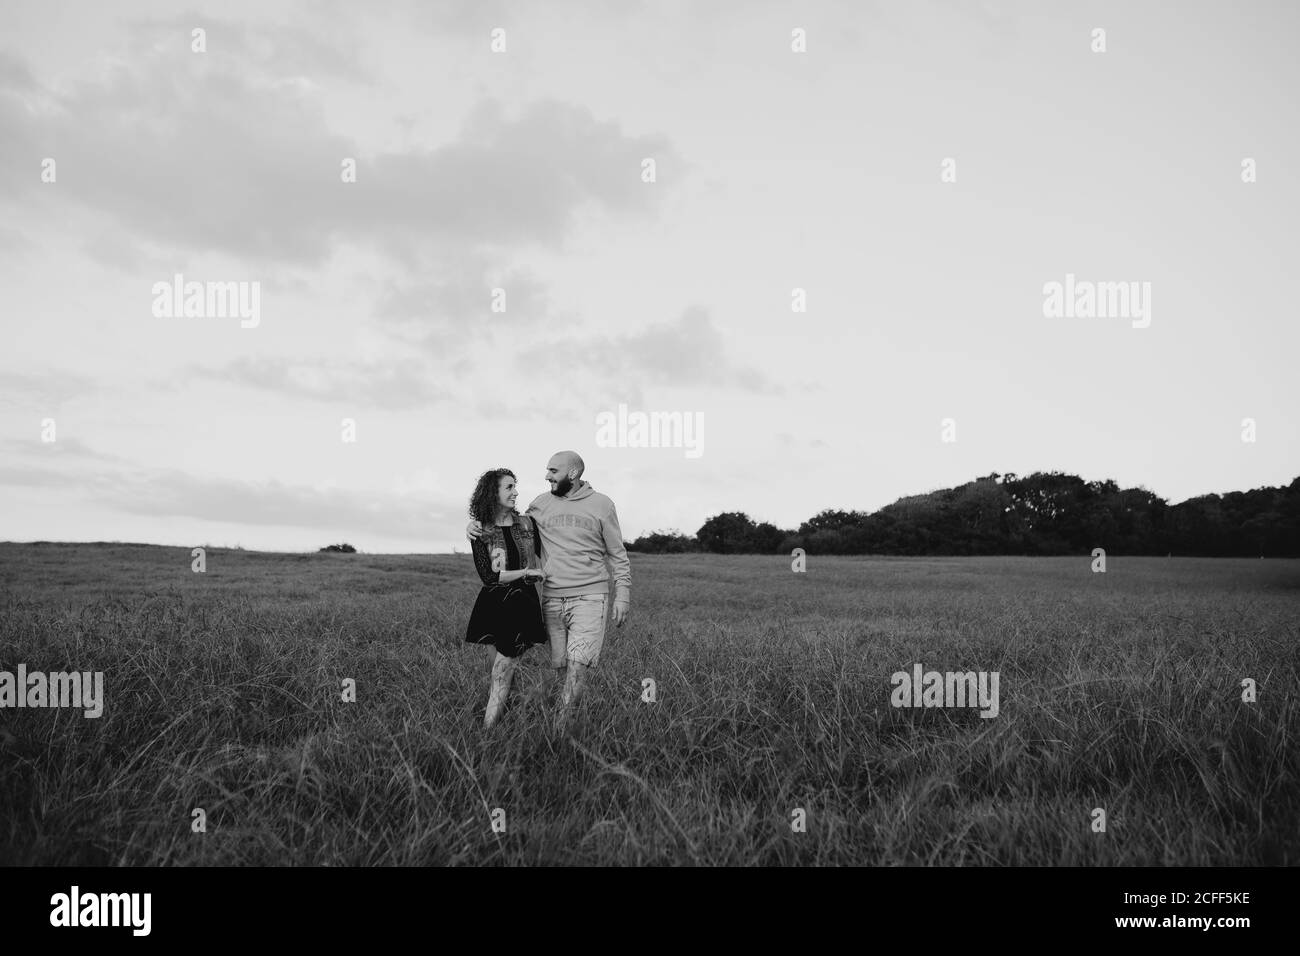 Fröhliches romantisches junges Paar, das Hände hält und auf Grün läuft Feld am Meer bei Sonnenuntergang mit bewölktem Himmel Stockfoto